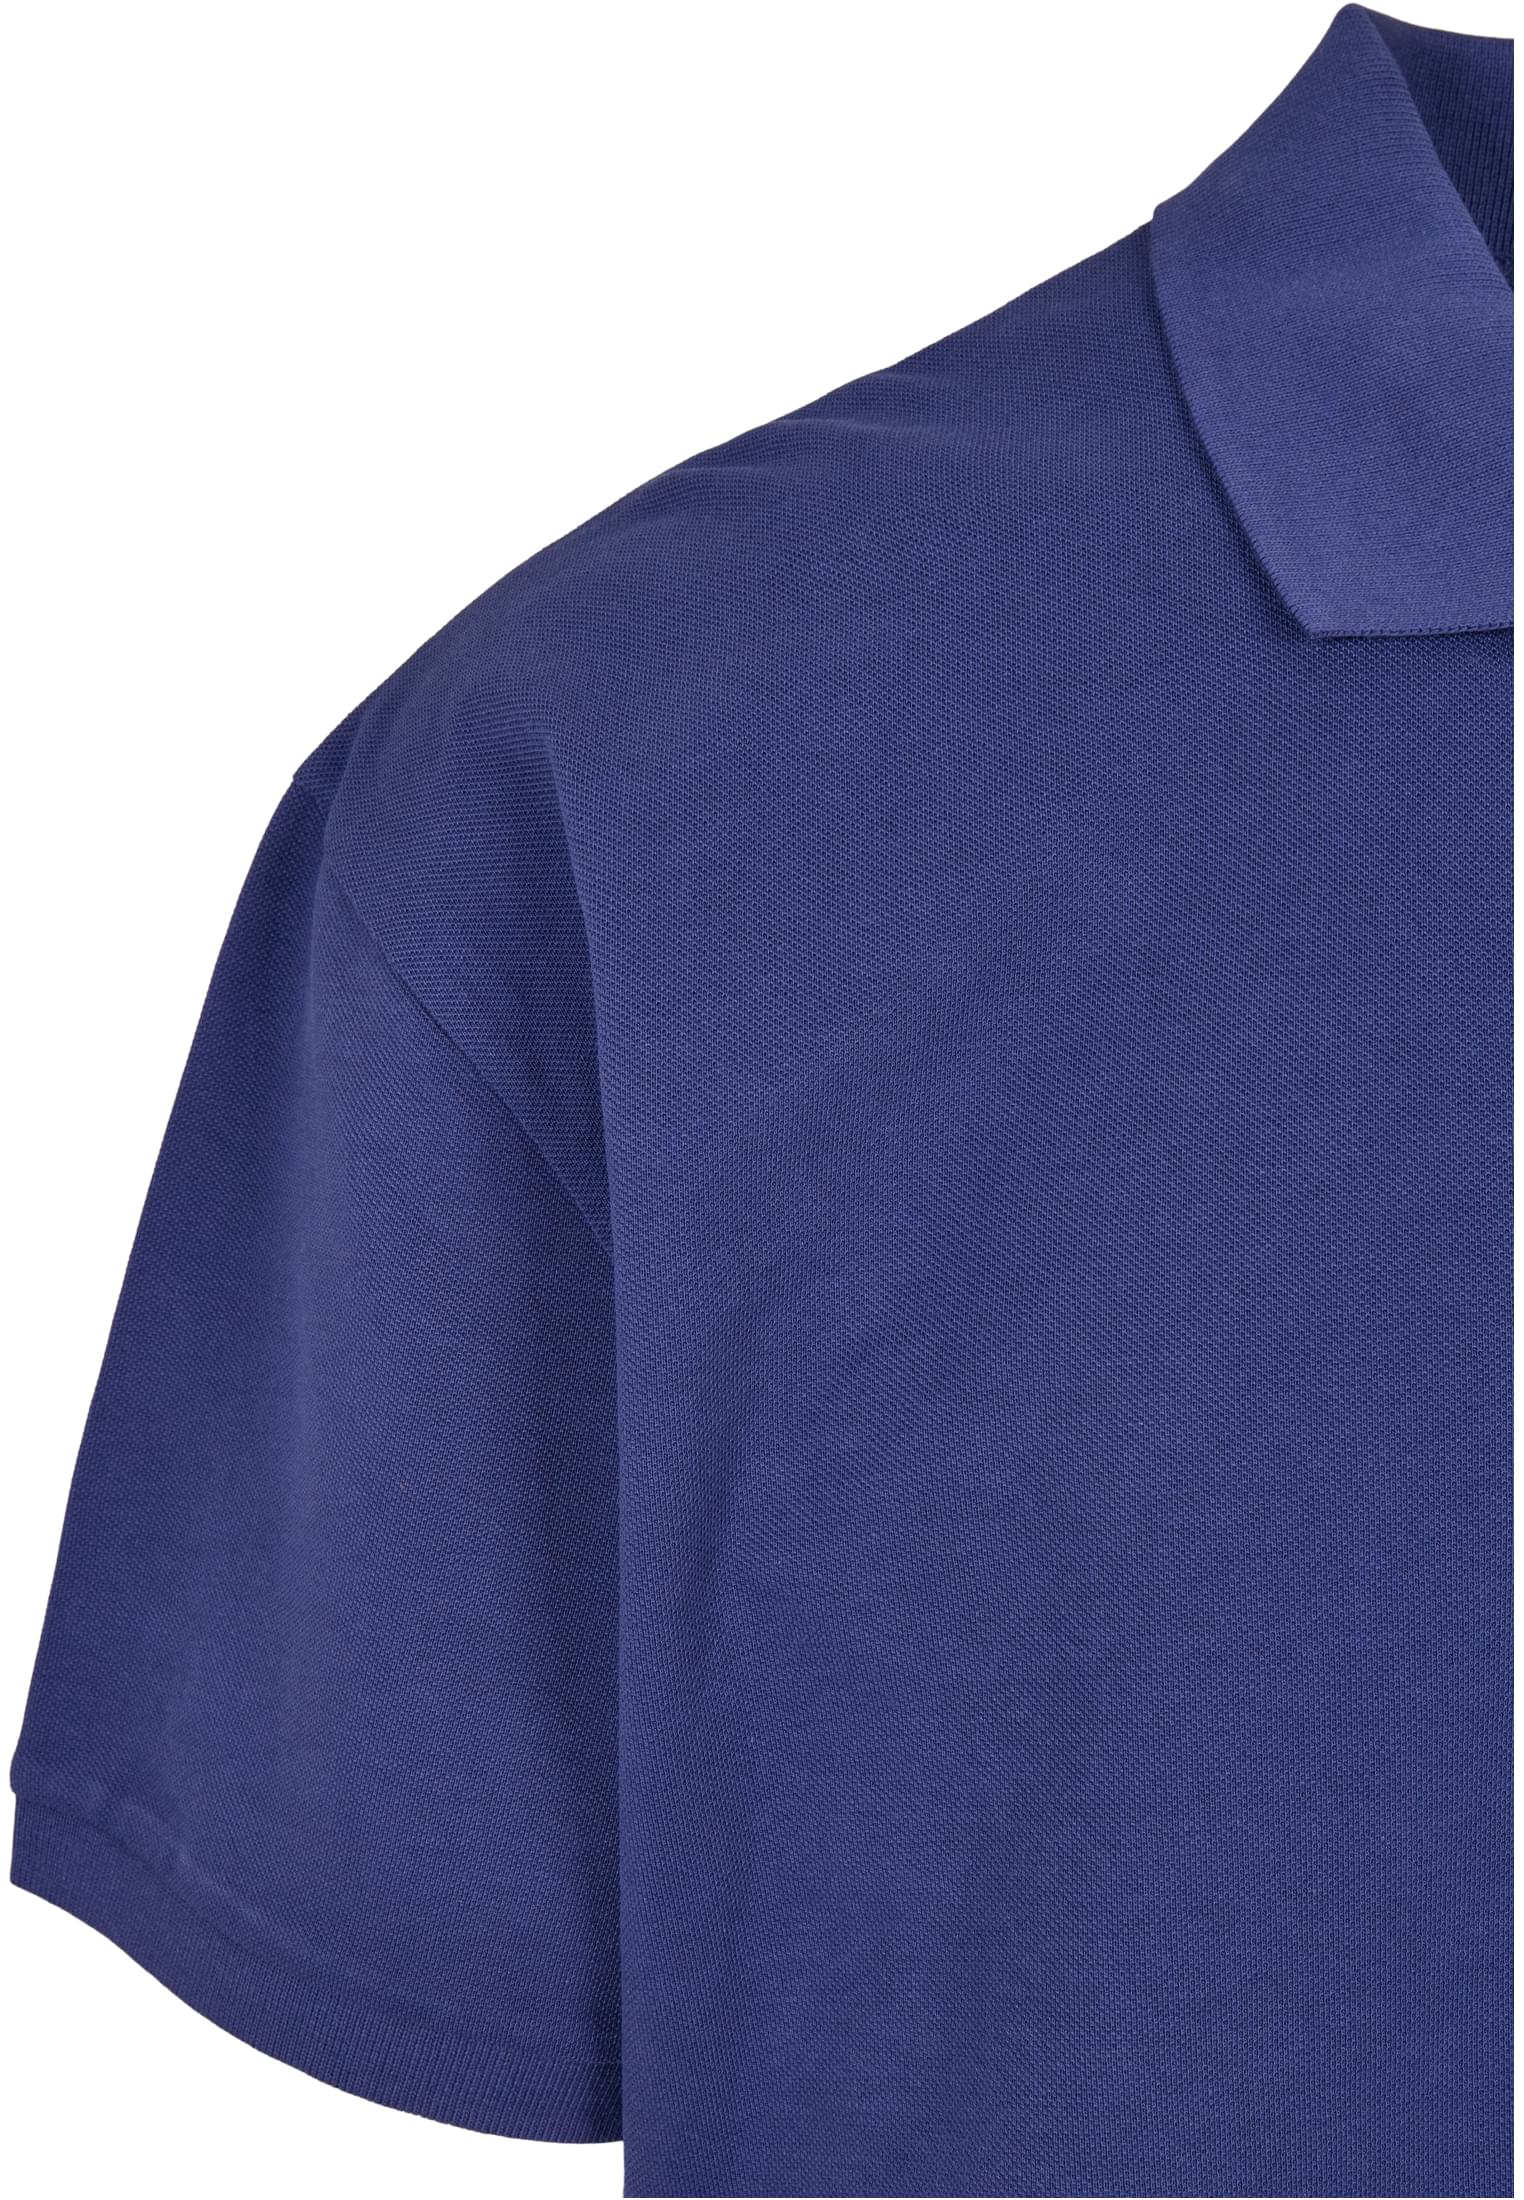 Hemden Oversized Polo in Farbe bluelight